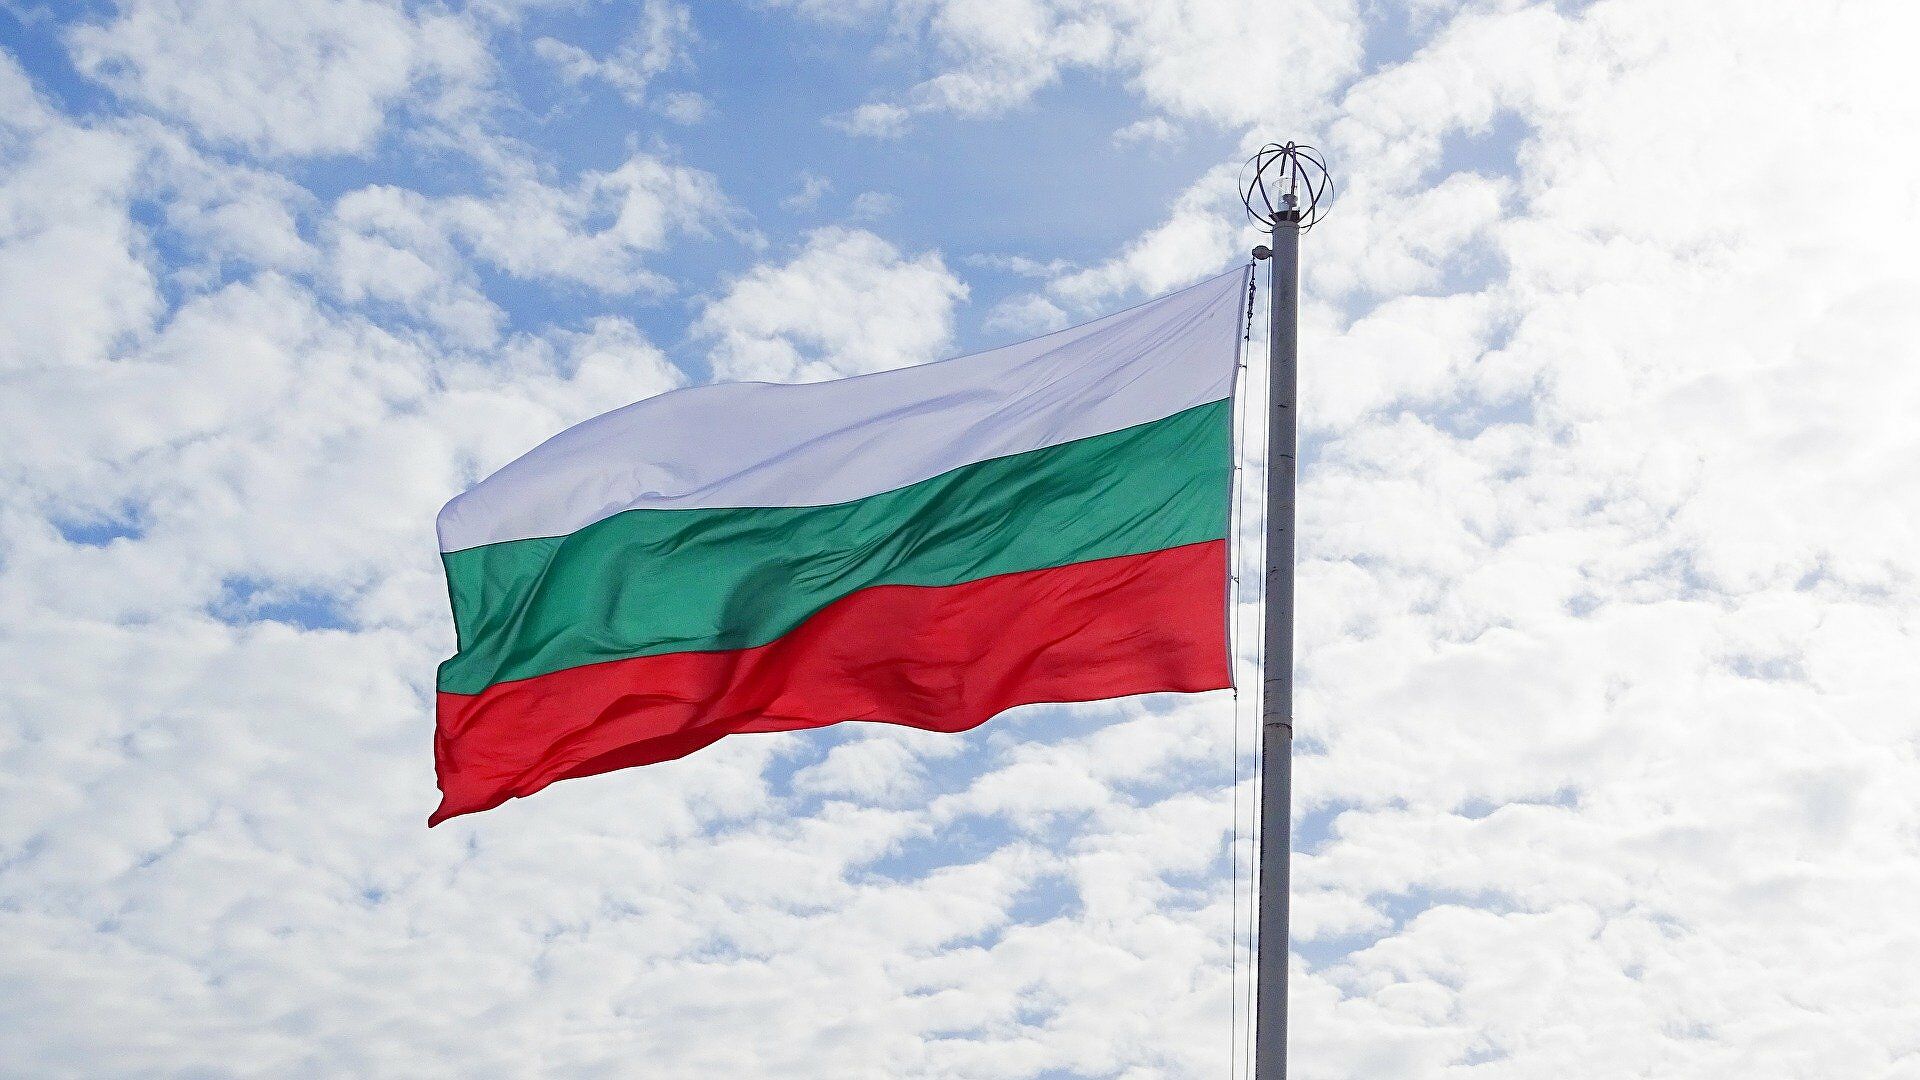 Βουλγαρία: Αποτυχία και του δεύτερου κόμματος να σχηματίσει κυβέρνηση – Προς νέες εκλογές η χώρα